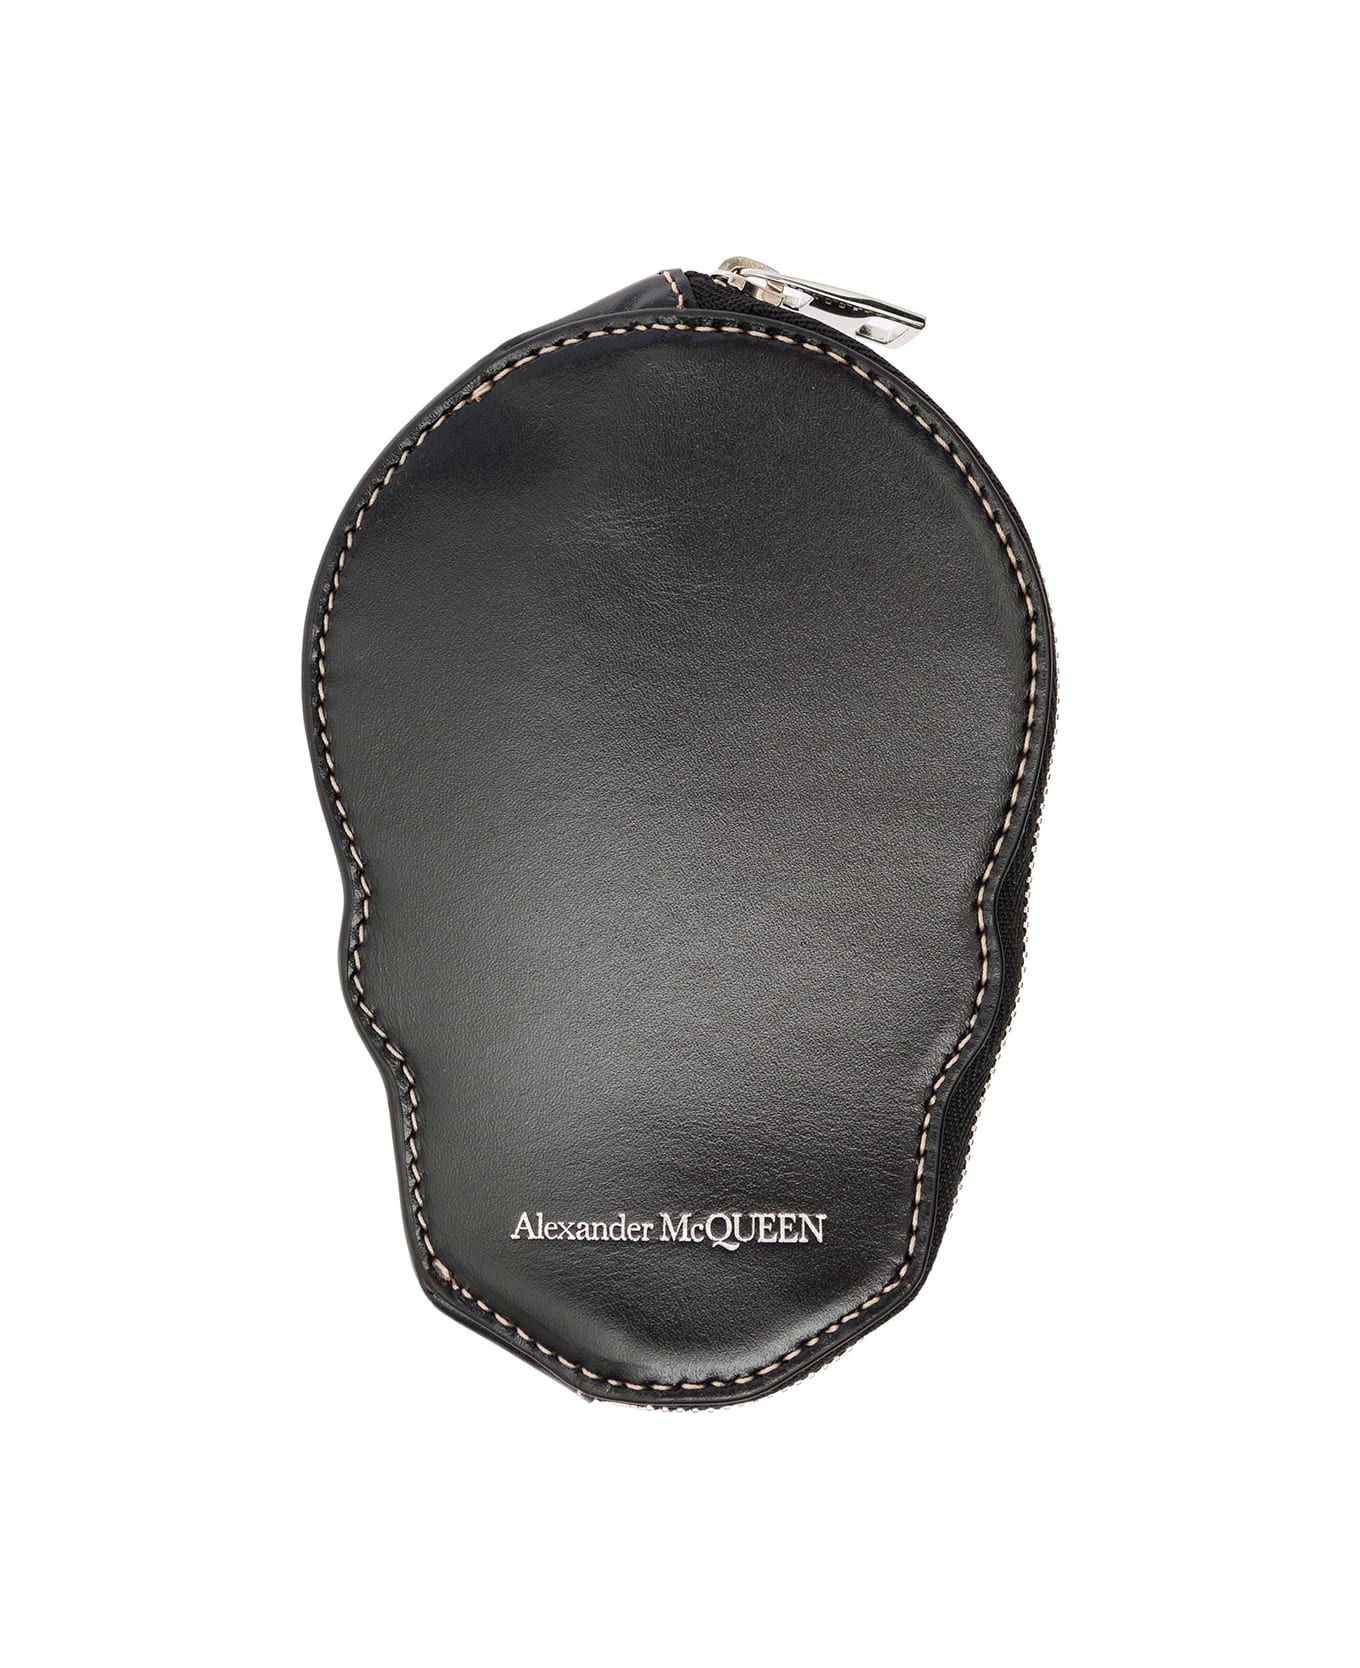 Alexander McQueen Black Skull-shaped Card-holder With Zip In Leather Man Alexander Mcqueen - Black